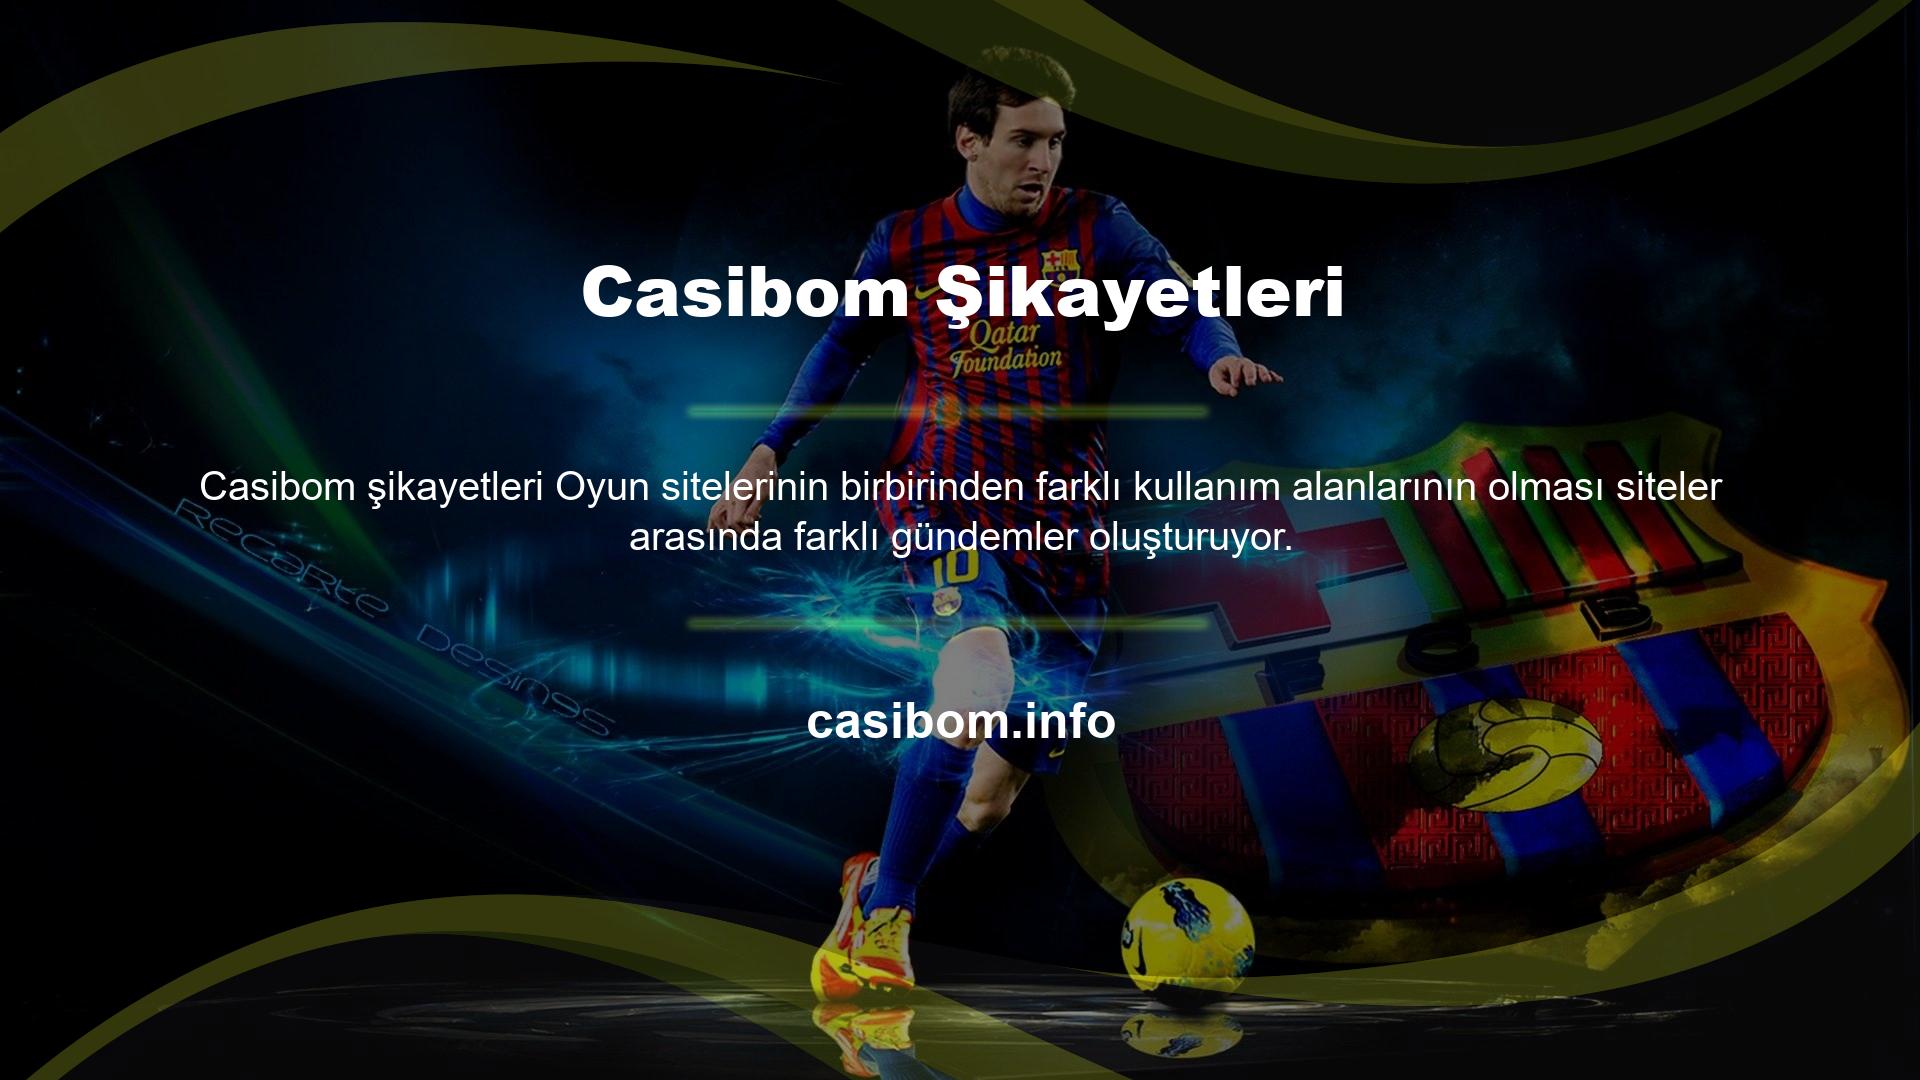 Casibom web sitesi kullanımı da açıldığı günden bu yana artmış ve en iyi casino sitelerinden biridir